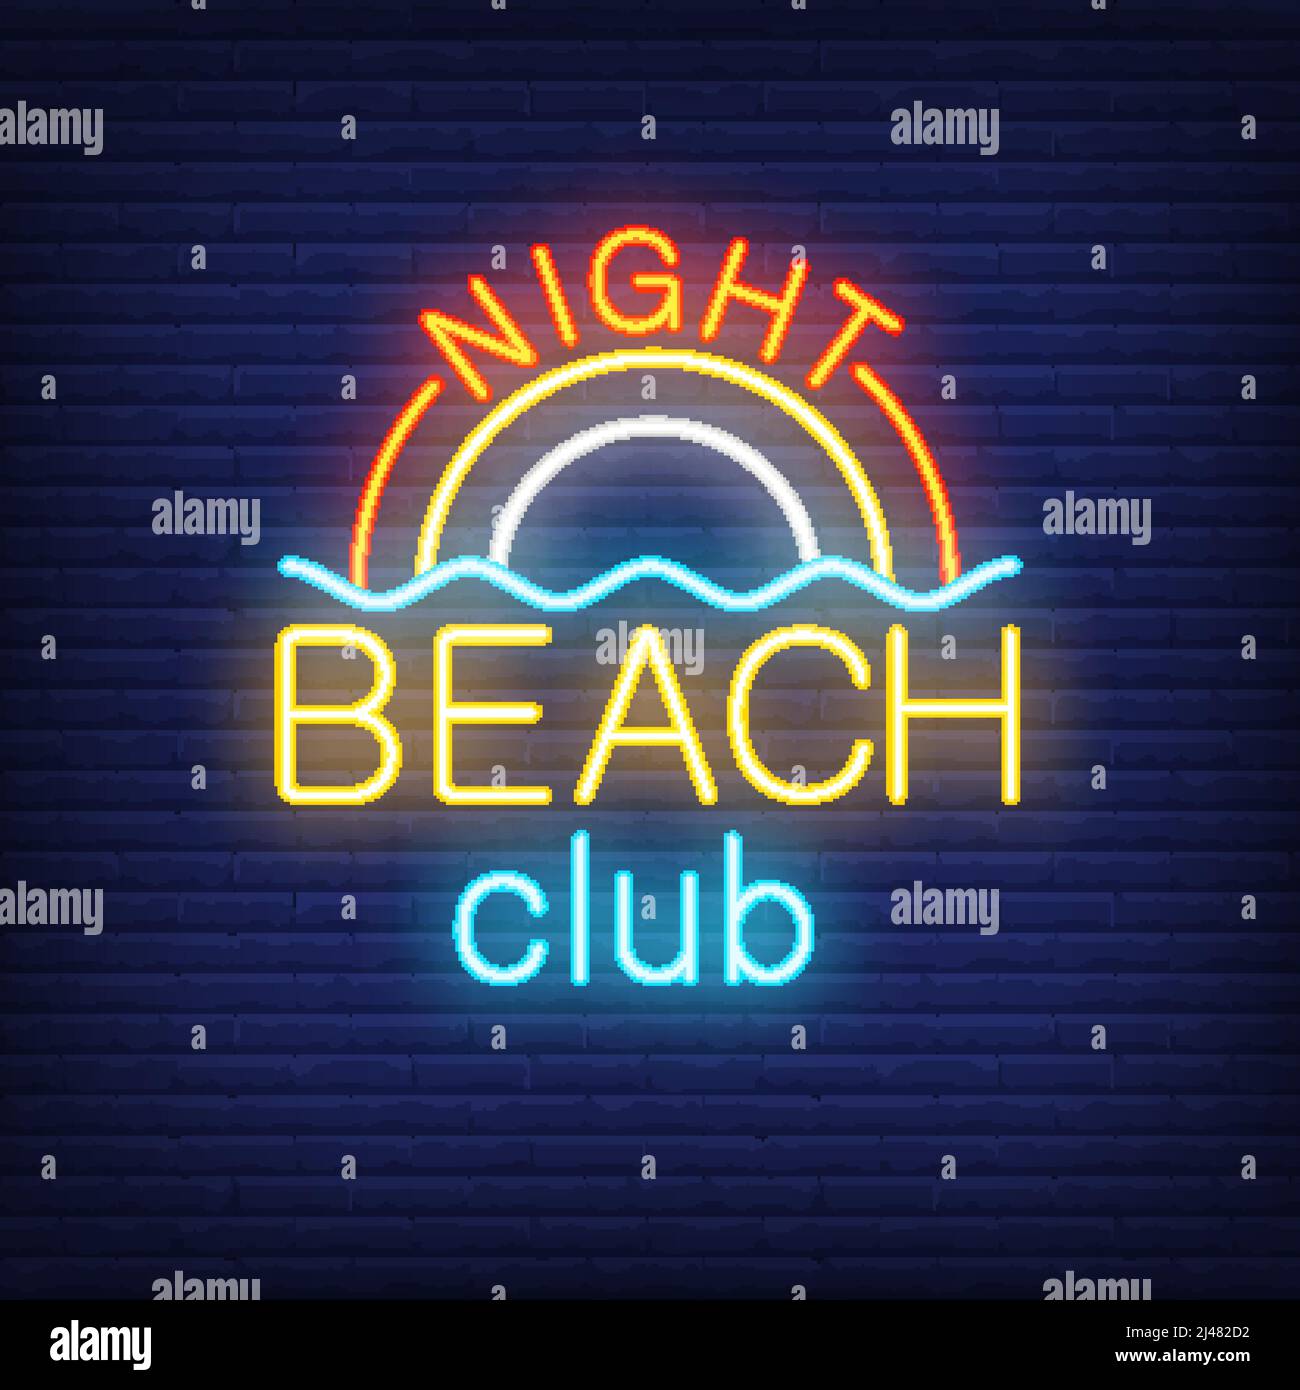 Scritta Night Beach Club e arcobaleno con onda. Cartello al neon su sfondo mattone. Bar, nightclub, resort estivo. Concetto di vacanza estiva. Per gli argomenti li Illustrazione Vettoriale